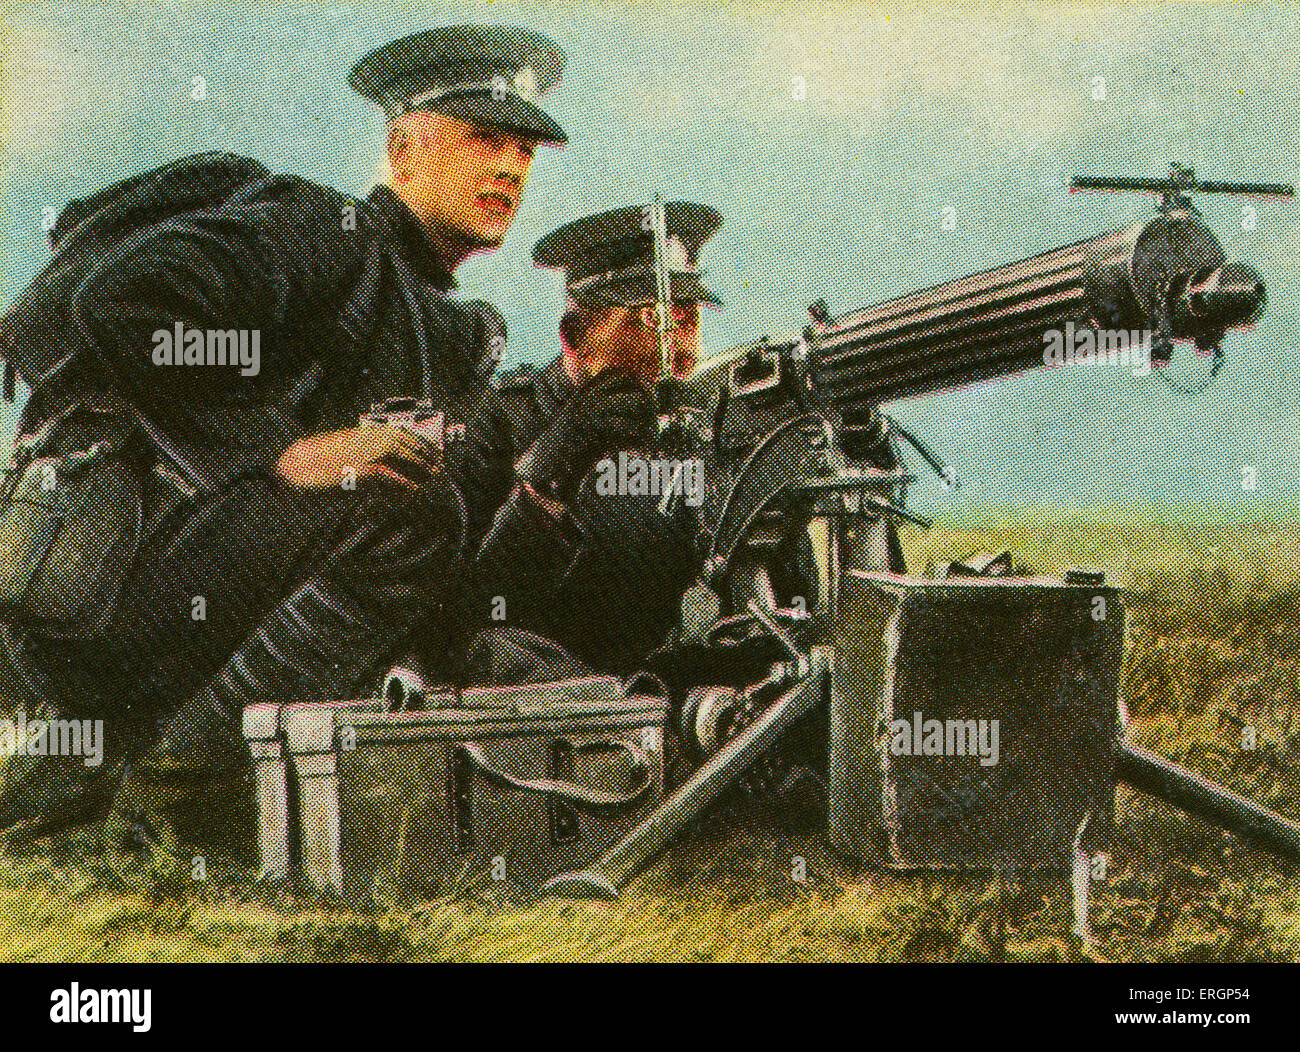 Englische schweres Maschinengewehr mit britischen Soldaten. Kapazität wurde 900-1000 Schuss pro Minute. Von mehreren Soldaten bedient werden mussten. (Quelle: Zigarettenkarten in Deutschland c.1934 Überprüfung militärischen Ausrüstung im Wettrüsten vor WW2 veröffentlicht) Stockfoto